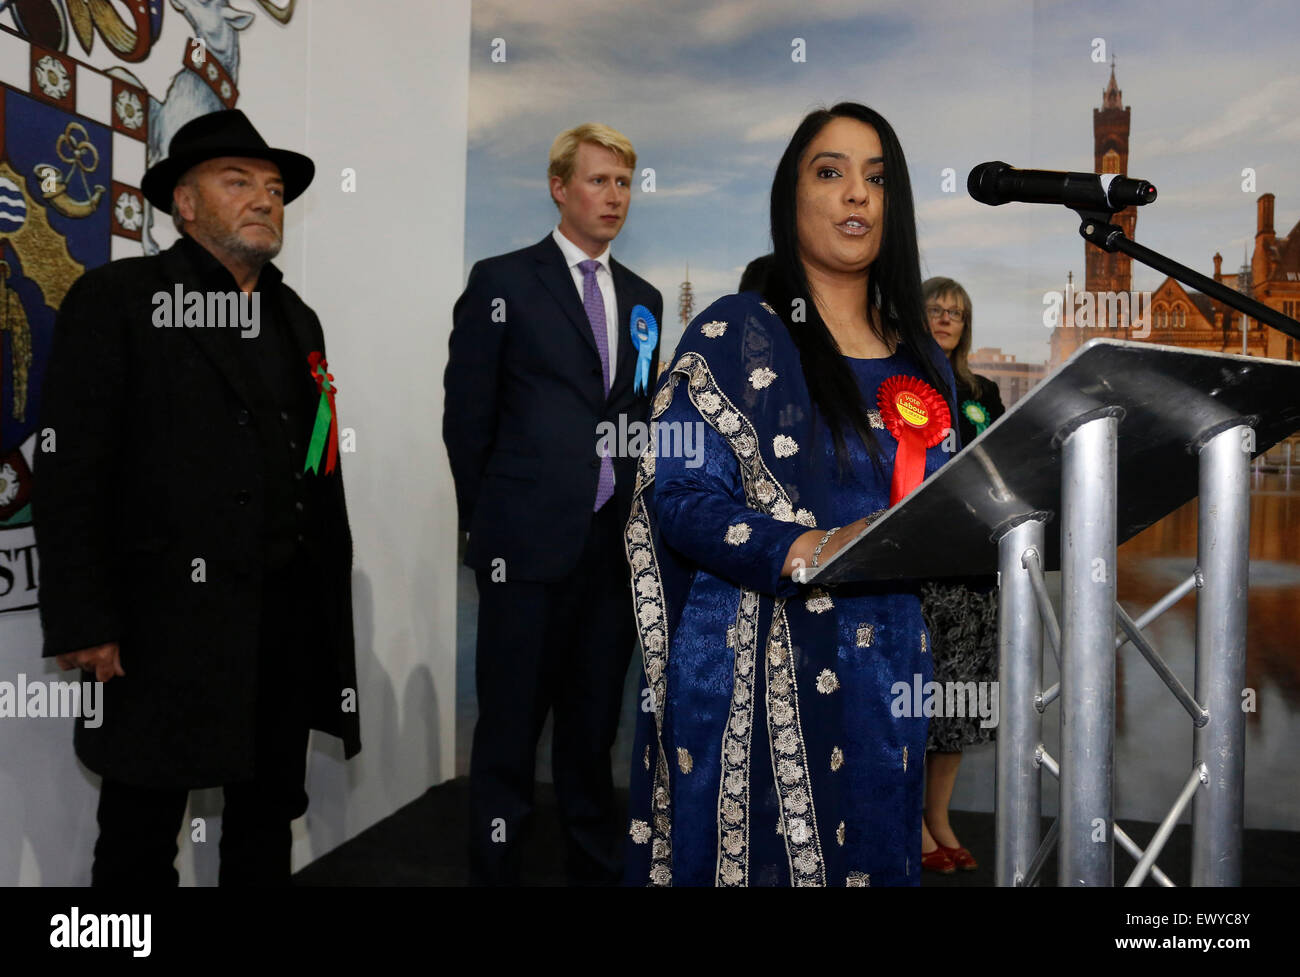 Candidat du travail rend sa victoire Shah Naz discours dans lequel elle condamne la tactique de l'ex-Bradford West MP George Galloway Banque D'Images